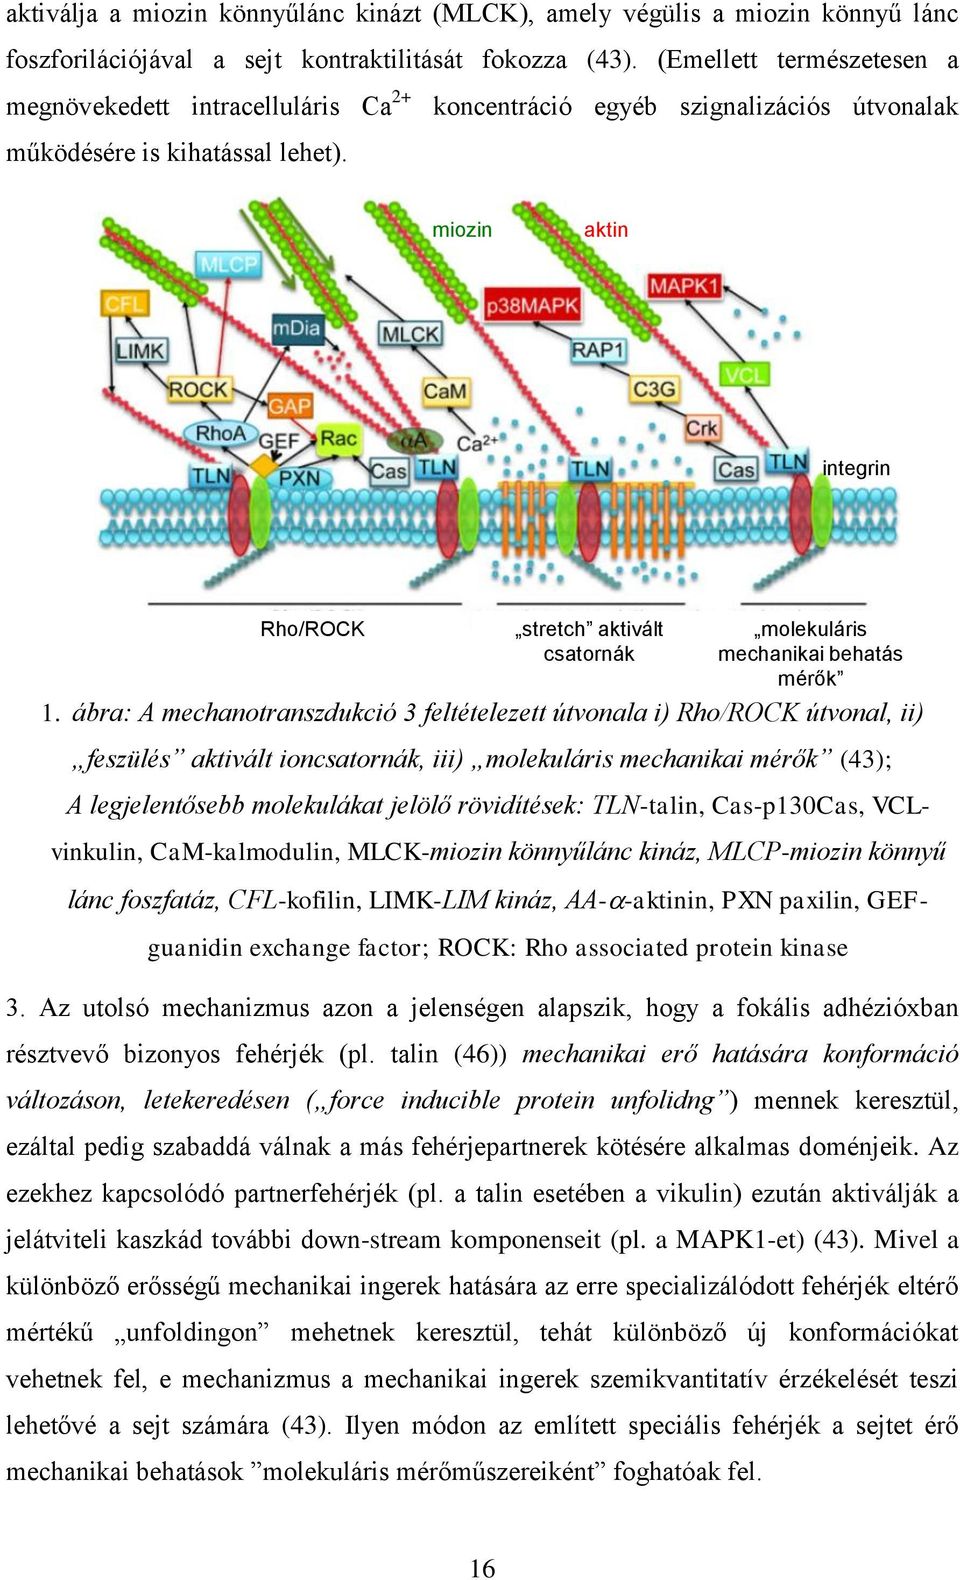 miozin aktin integrin Rho/ROCK stretch aktivált csatornák molekuláris mechanikai behatás mérők 1.